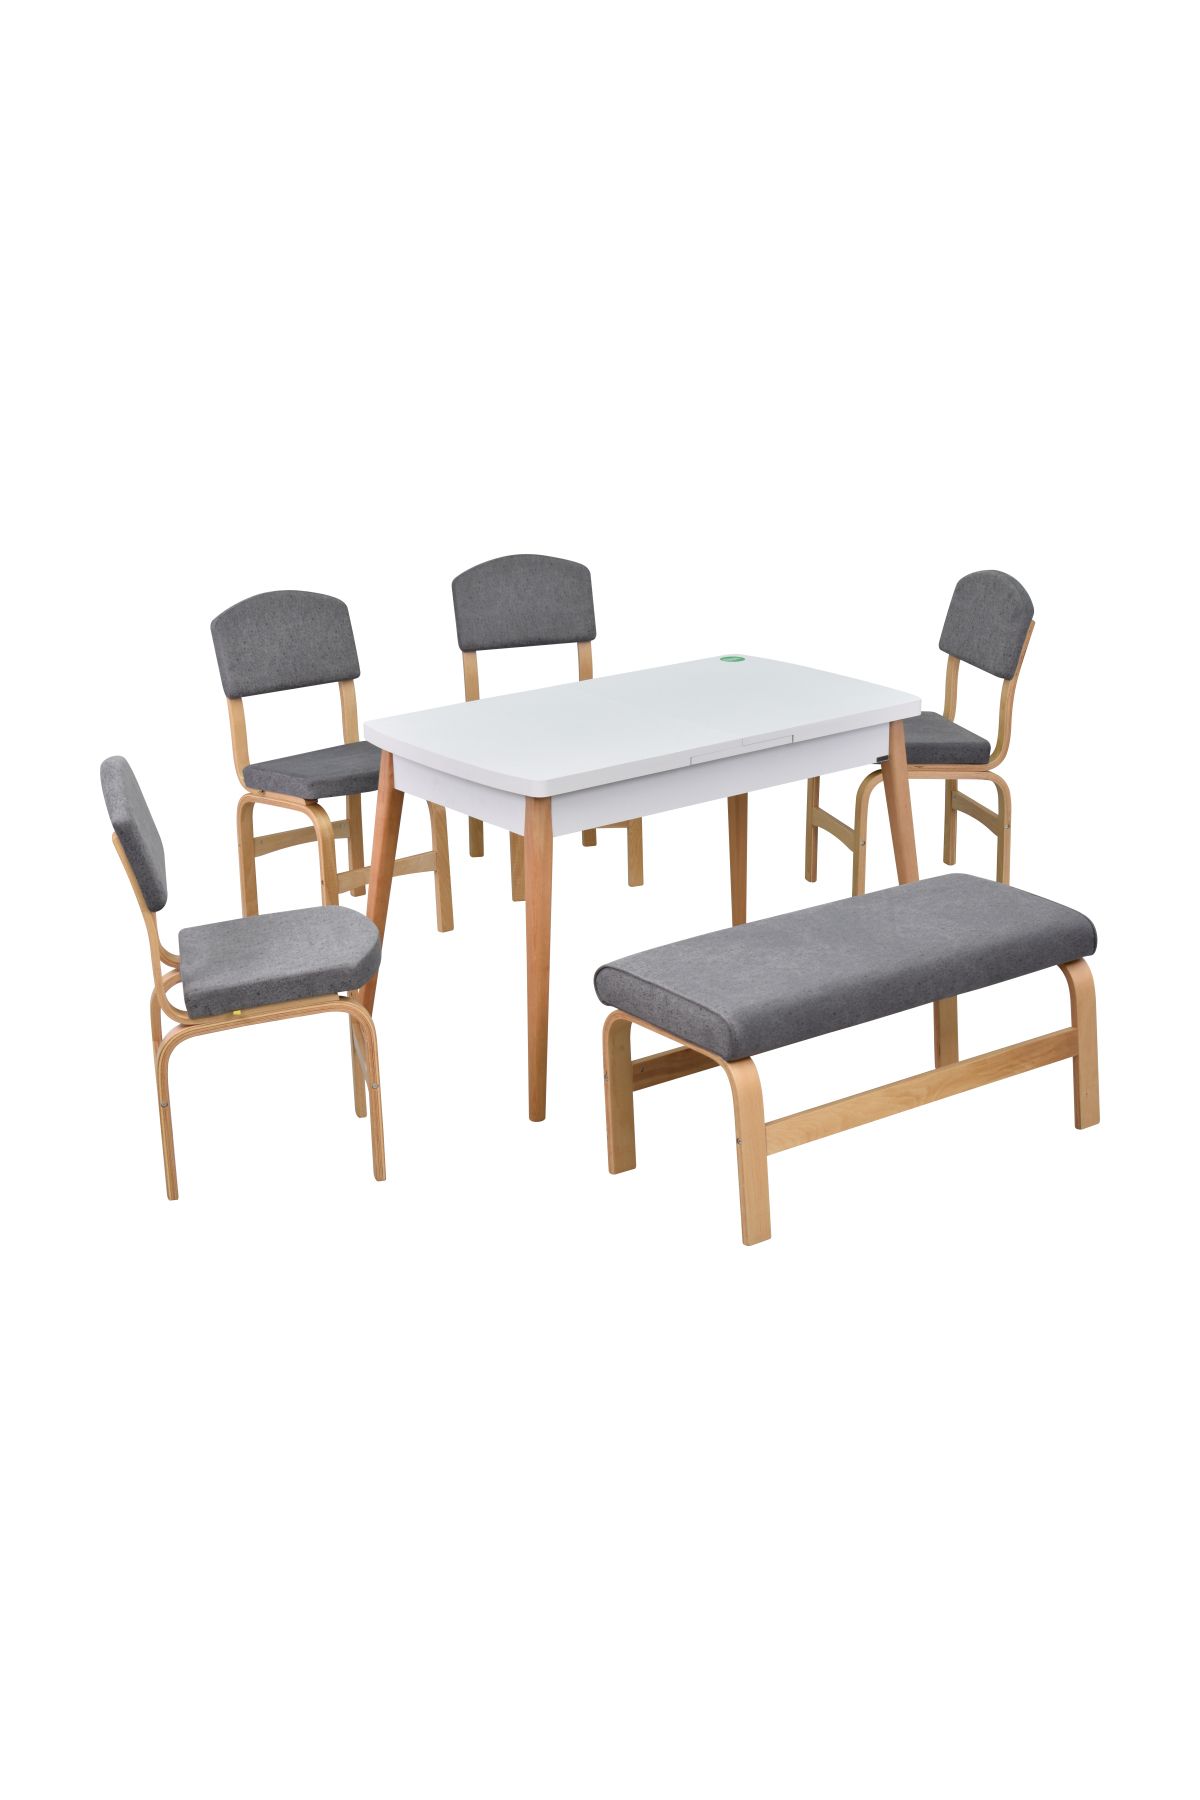 VİLİNZE Ege Sandalye-Bank Avanos Ahşap MDF Açılır Mutfak Masası Takımı - 70x120+30 cm